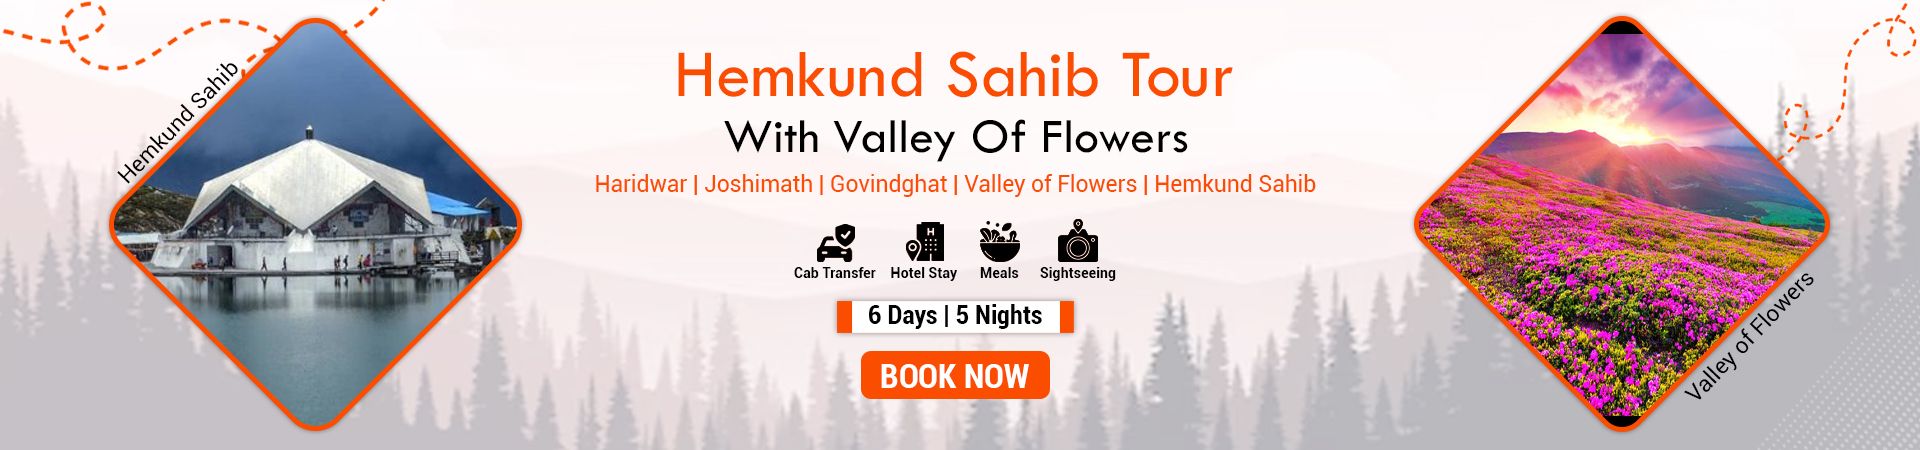 Hemkund Sahib Tour Package